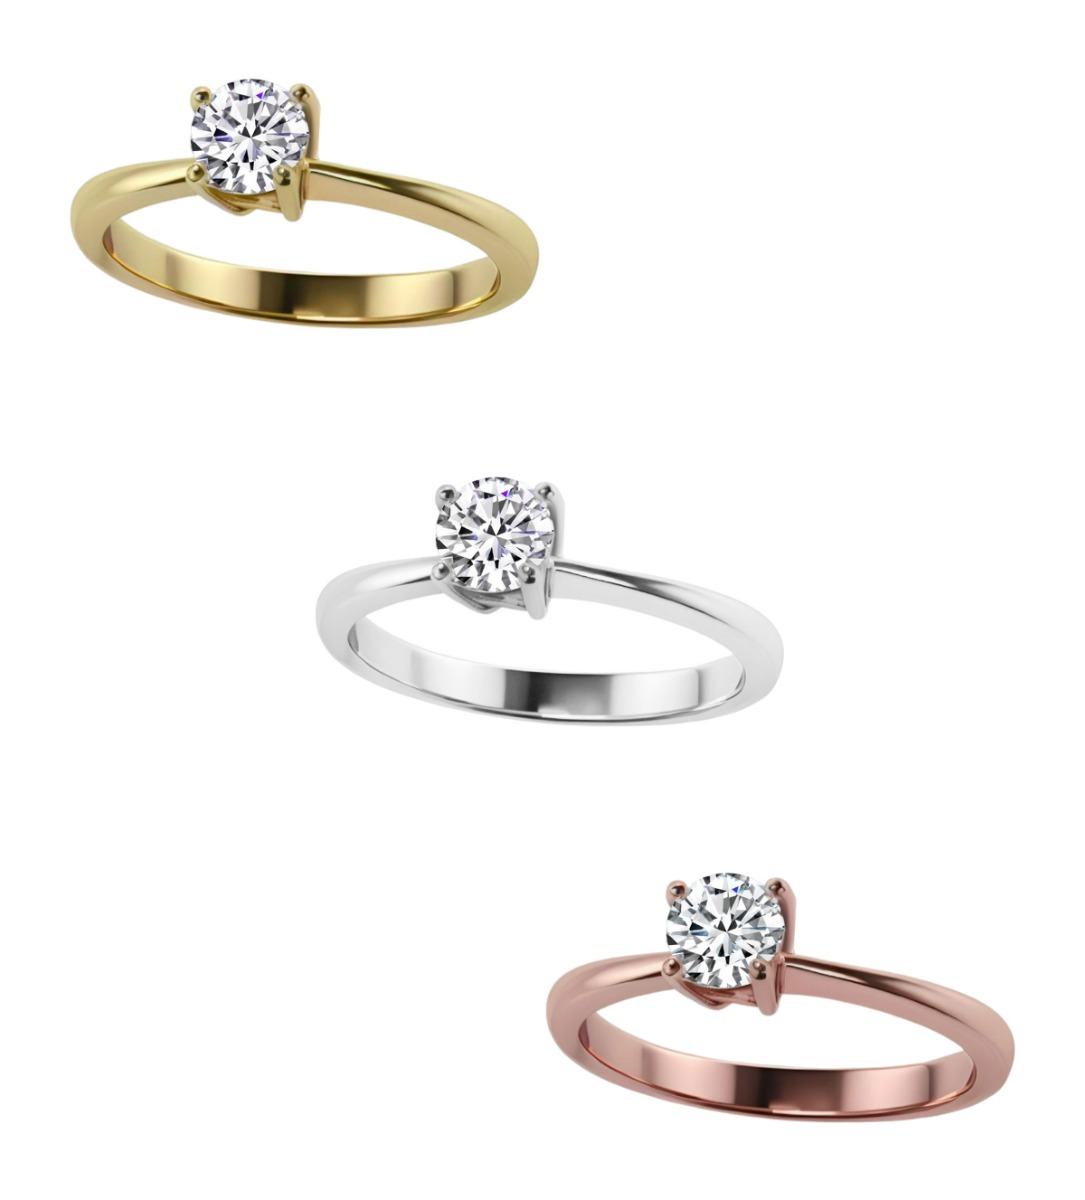 anillo de platino con diamante talla brillante precio especial barato para joyeria online foto con imagenes en oro de los tres tonos.